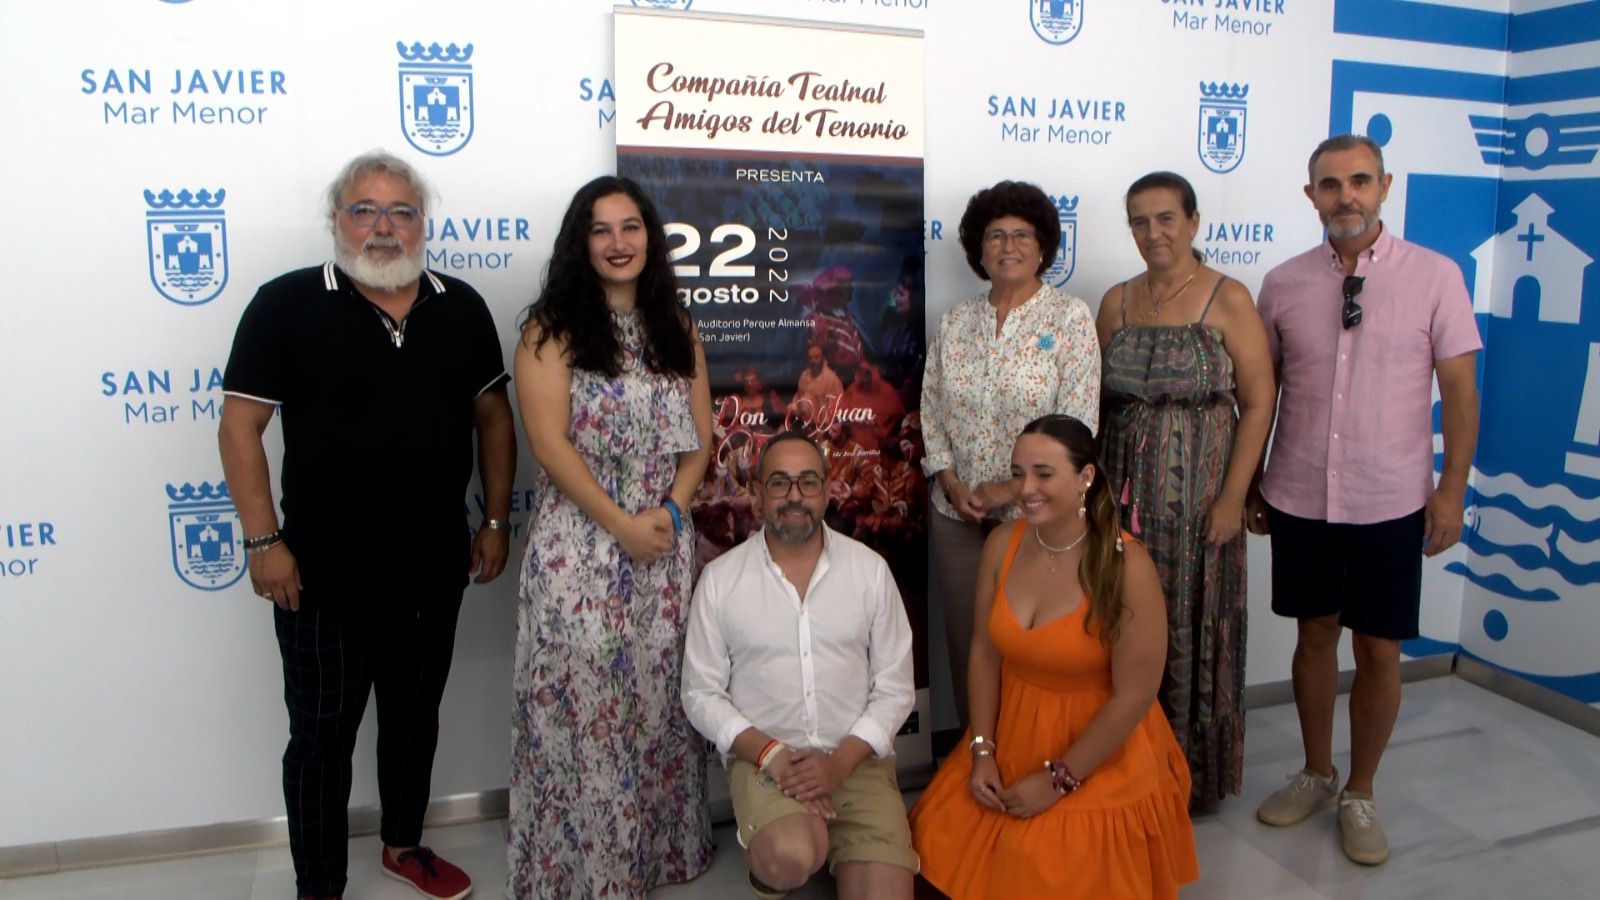 El clásico Don Juan Tenorio llega el 22 de agosto al Auditorio Parque Almansa